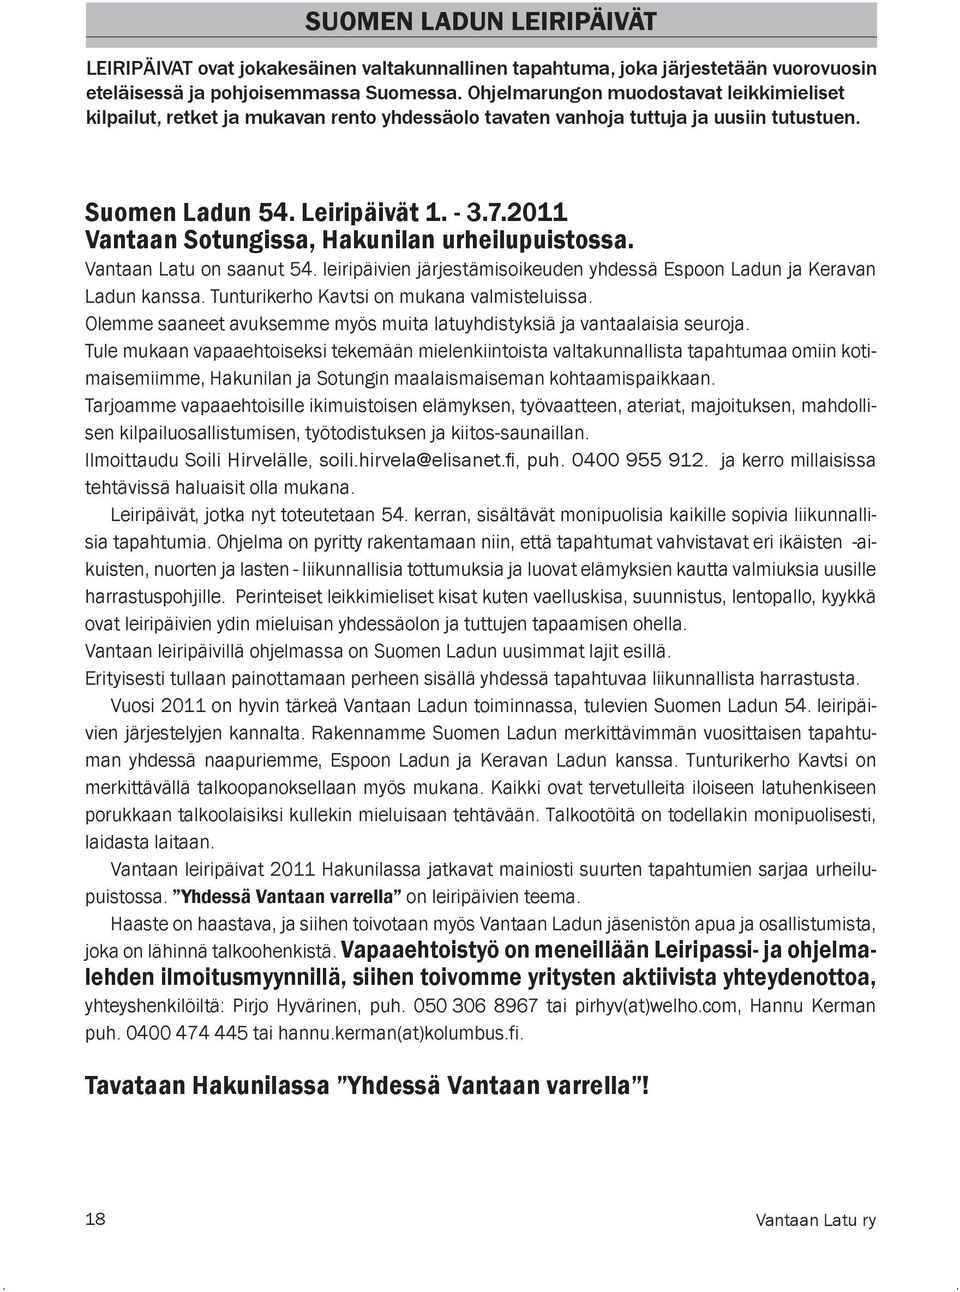 2011 Vantaan Sotungissa, Hakunilan urheilupuistossa. Vantaan Latu on saanut 54. leiripäivien järjestämisoikeuden yhdessä Espoon Ladun ja Keravan Ladun kanssa.